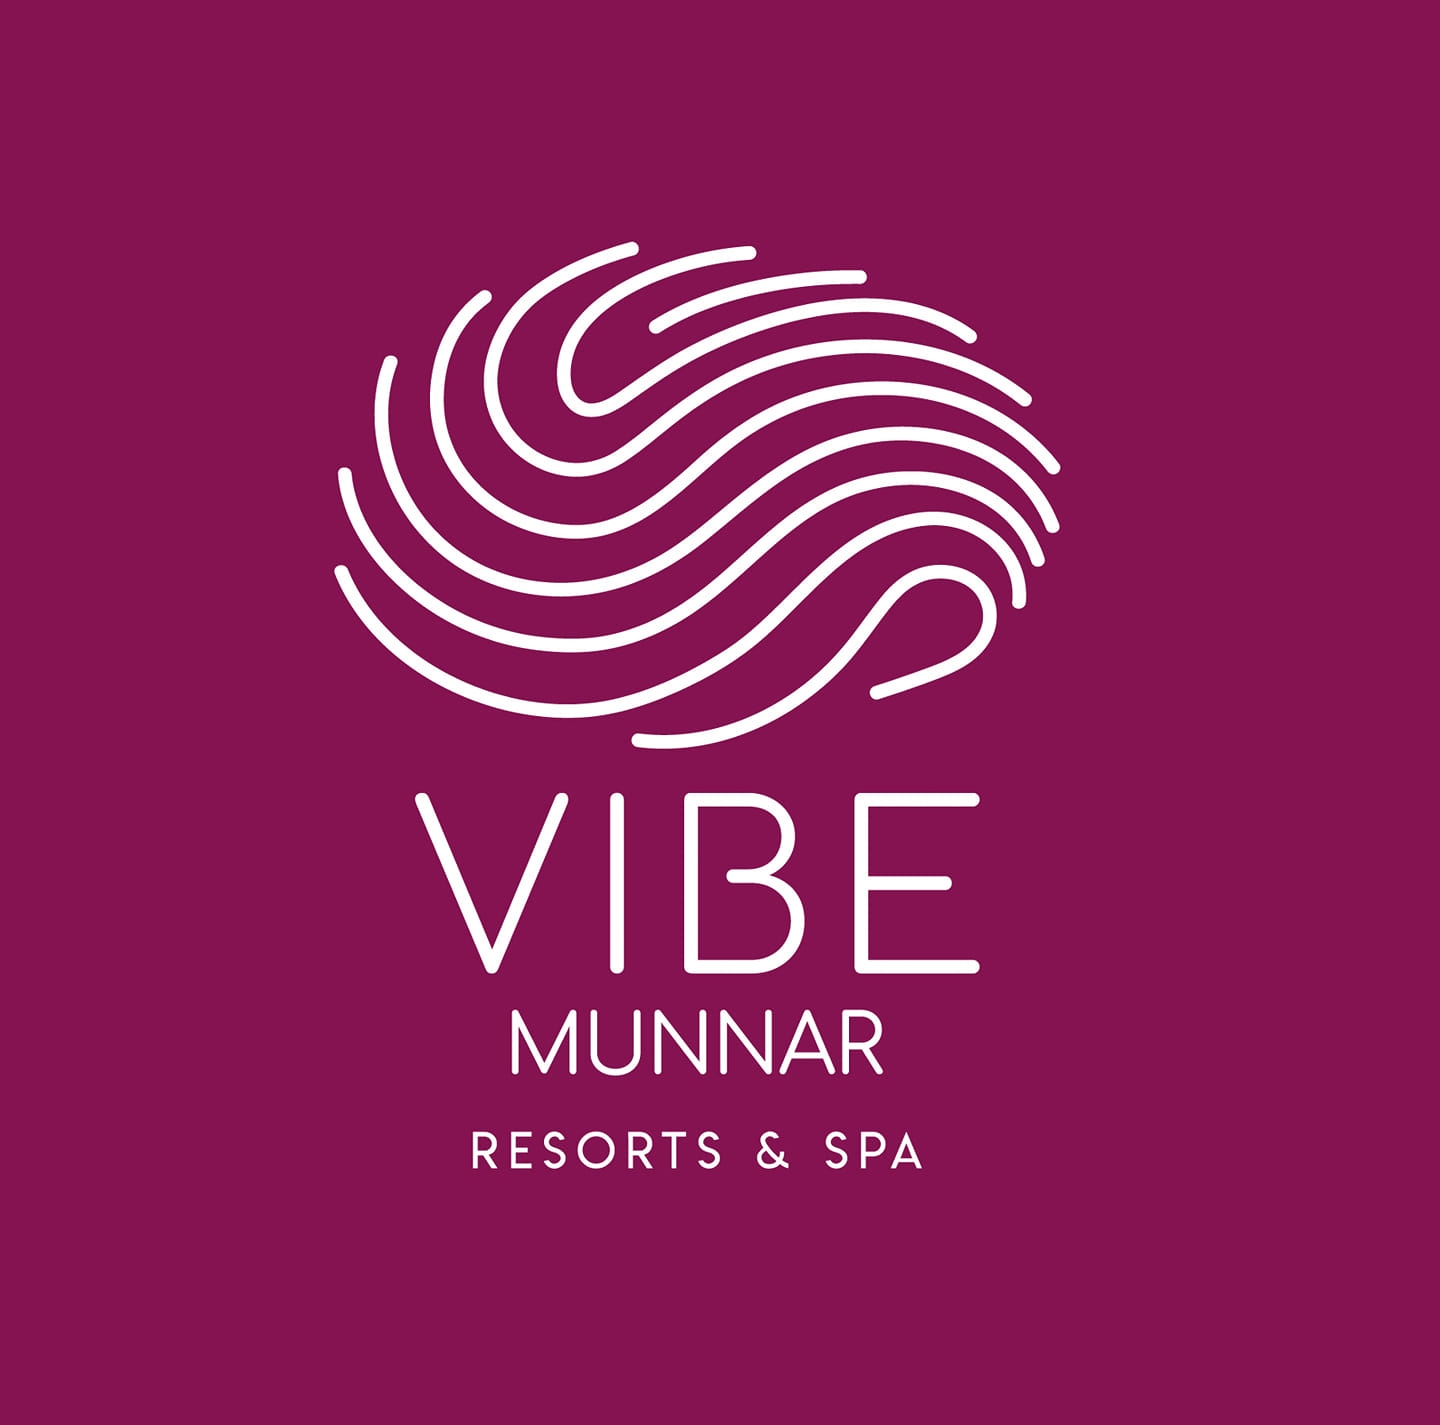 The Vibe Munnar Resorts & Spa